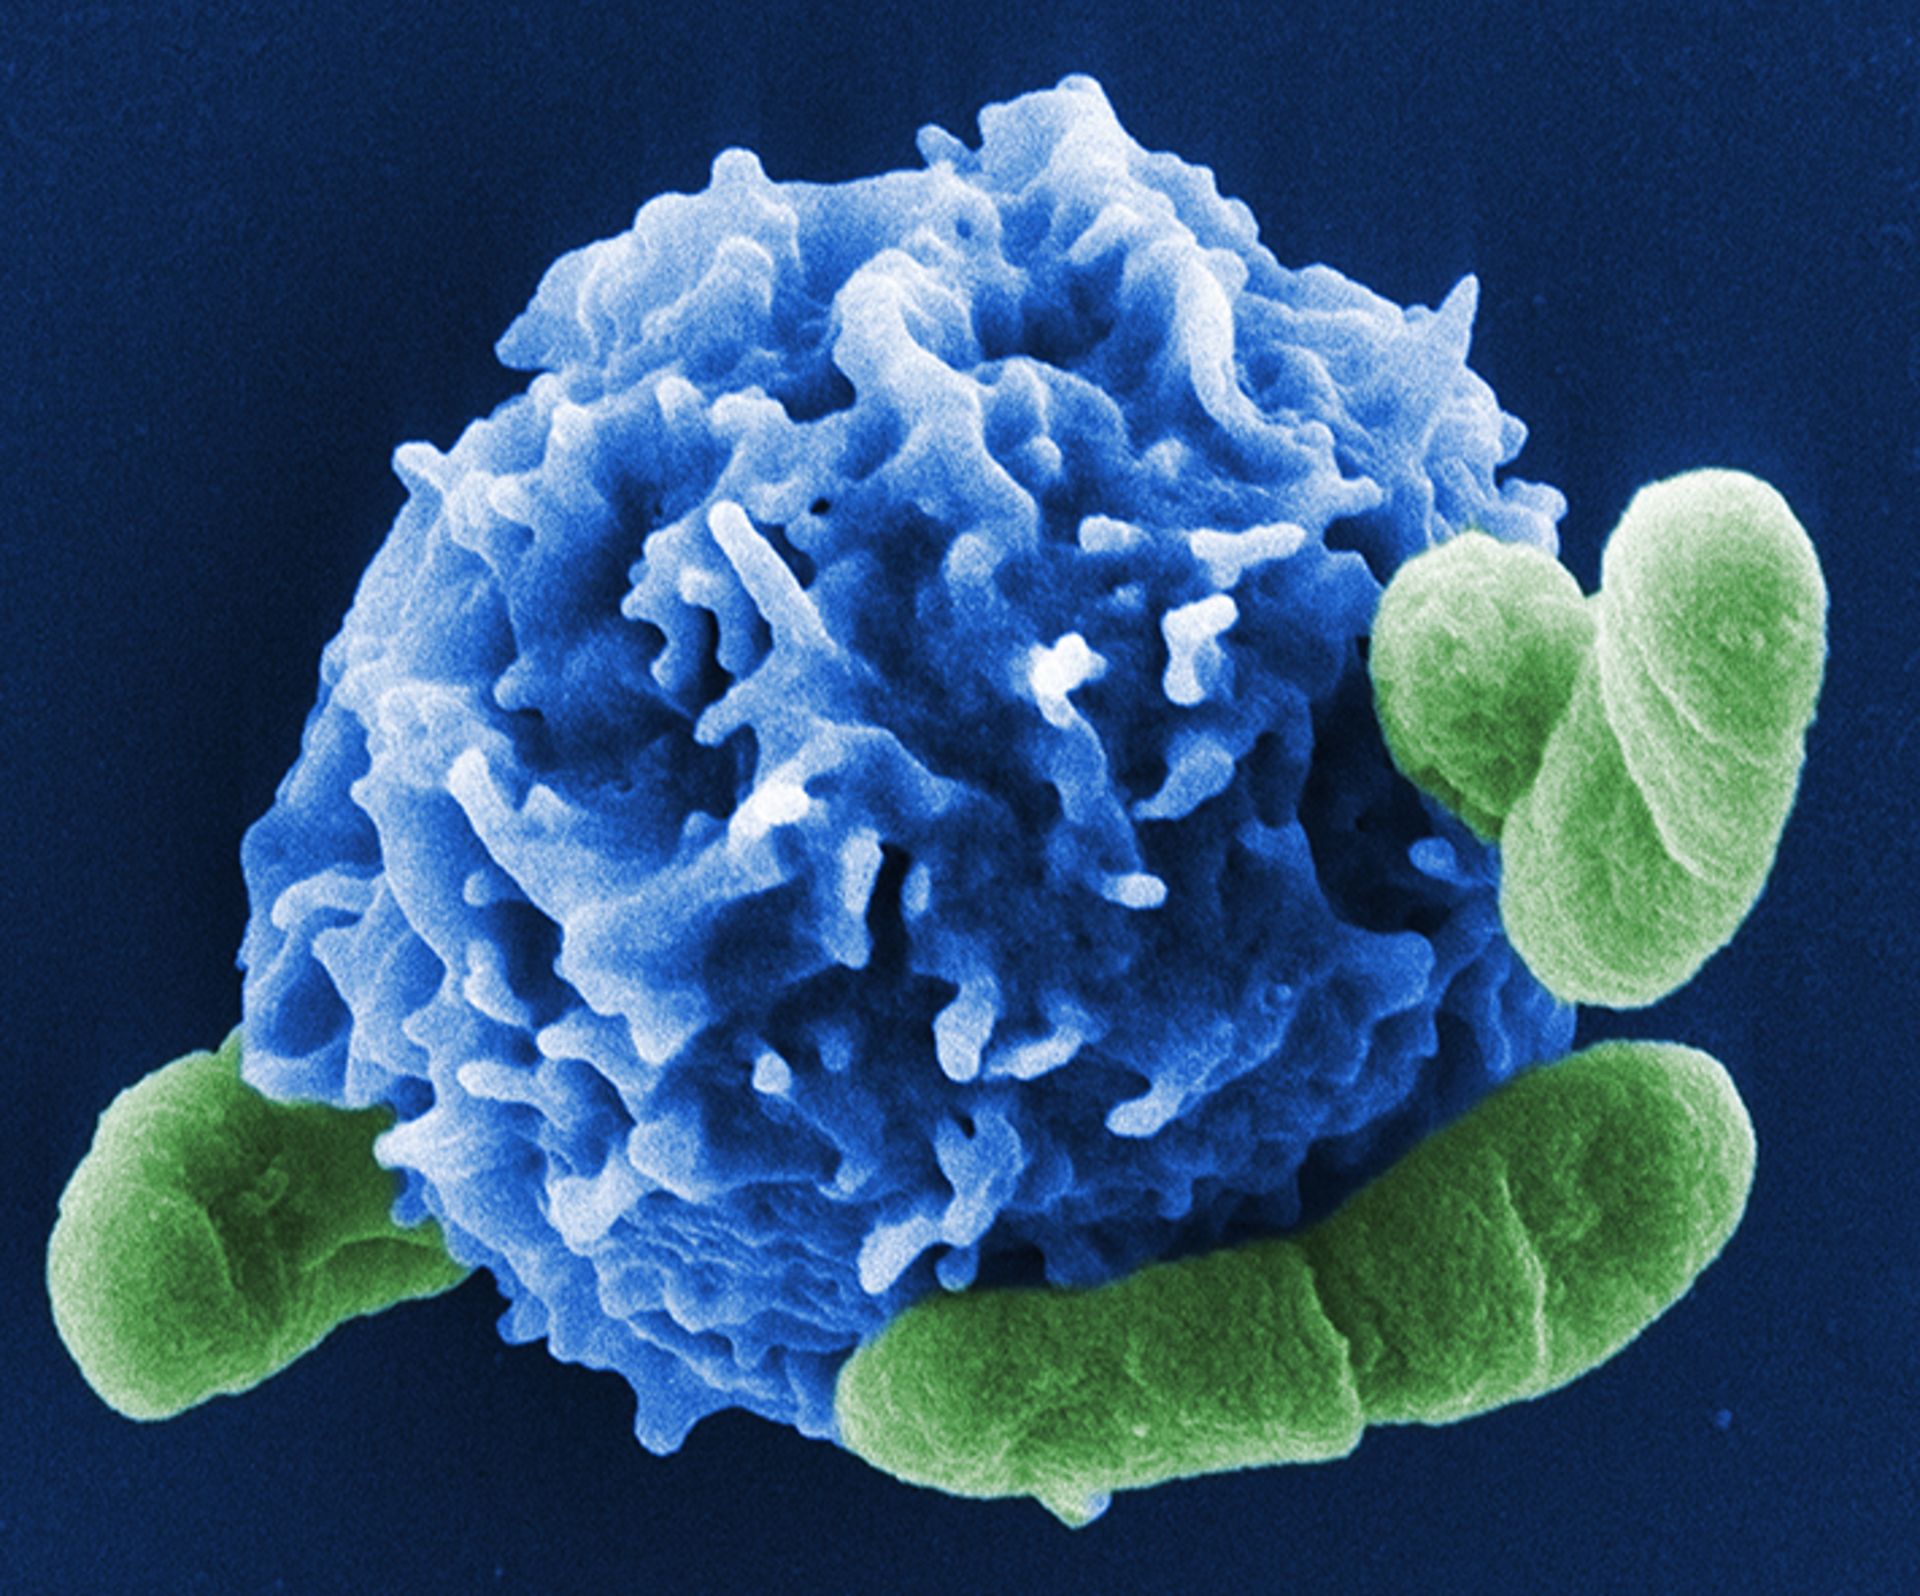 Regulatorische T-Zelle (blau) in Interaktion mit Bakterienzellen. © HZI/Manfred Rohde